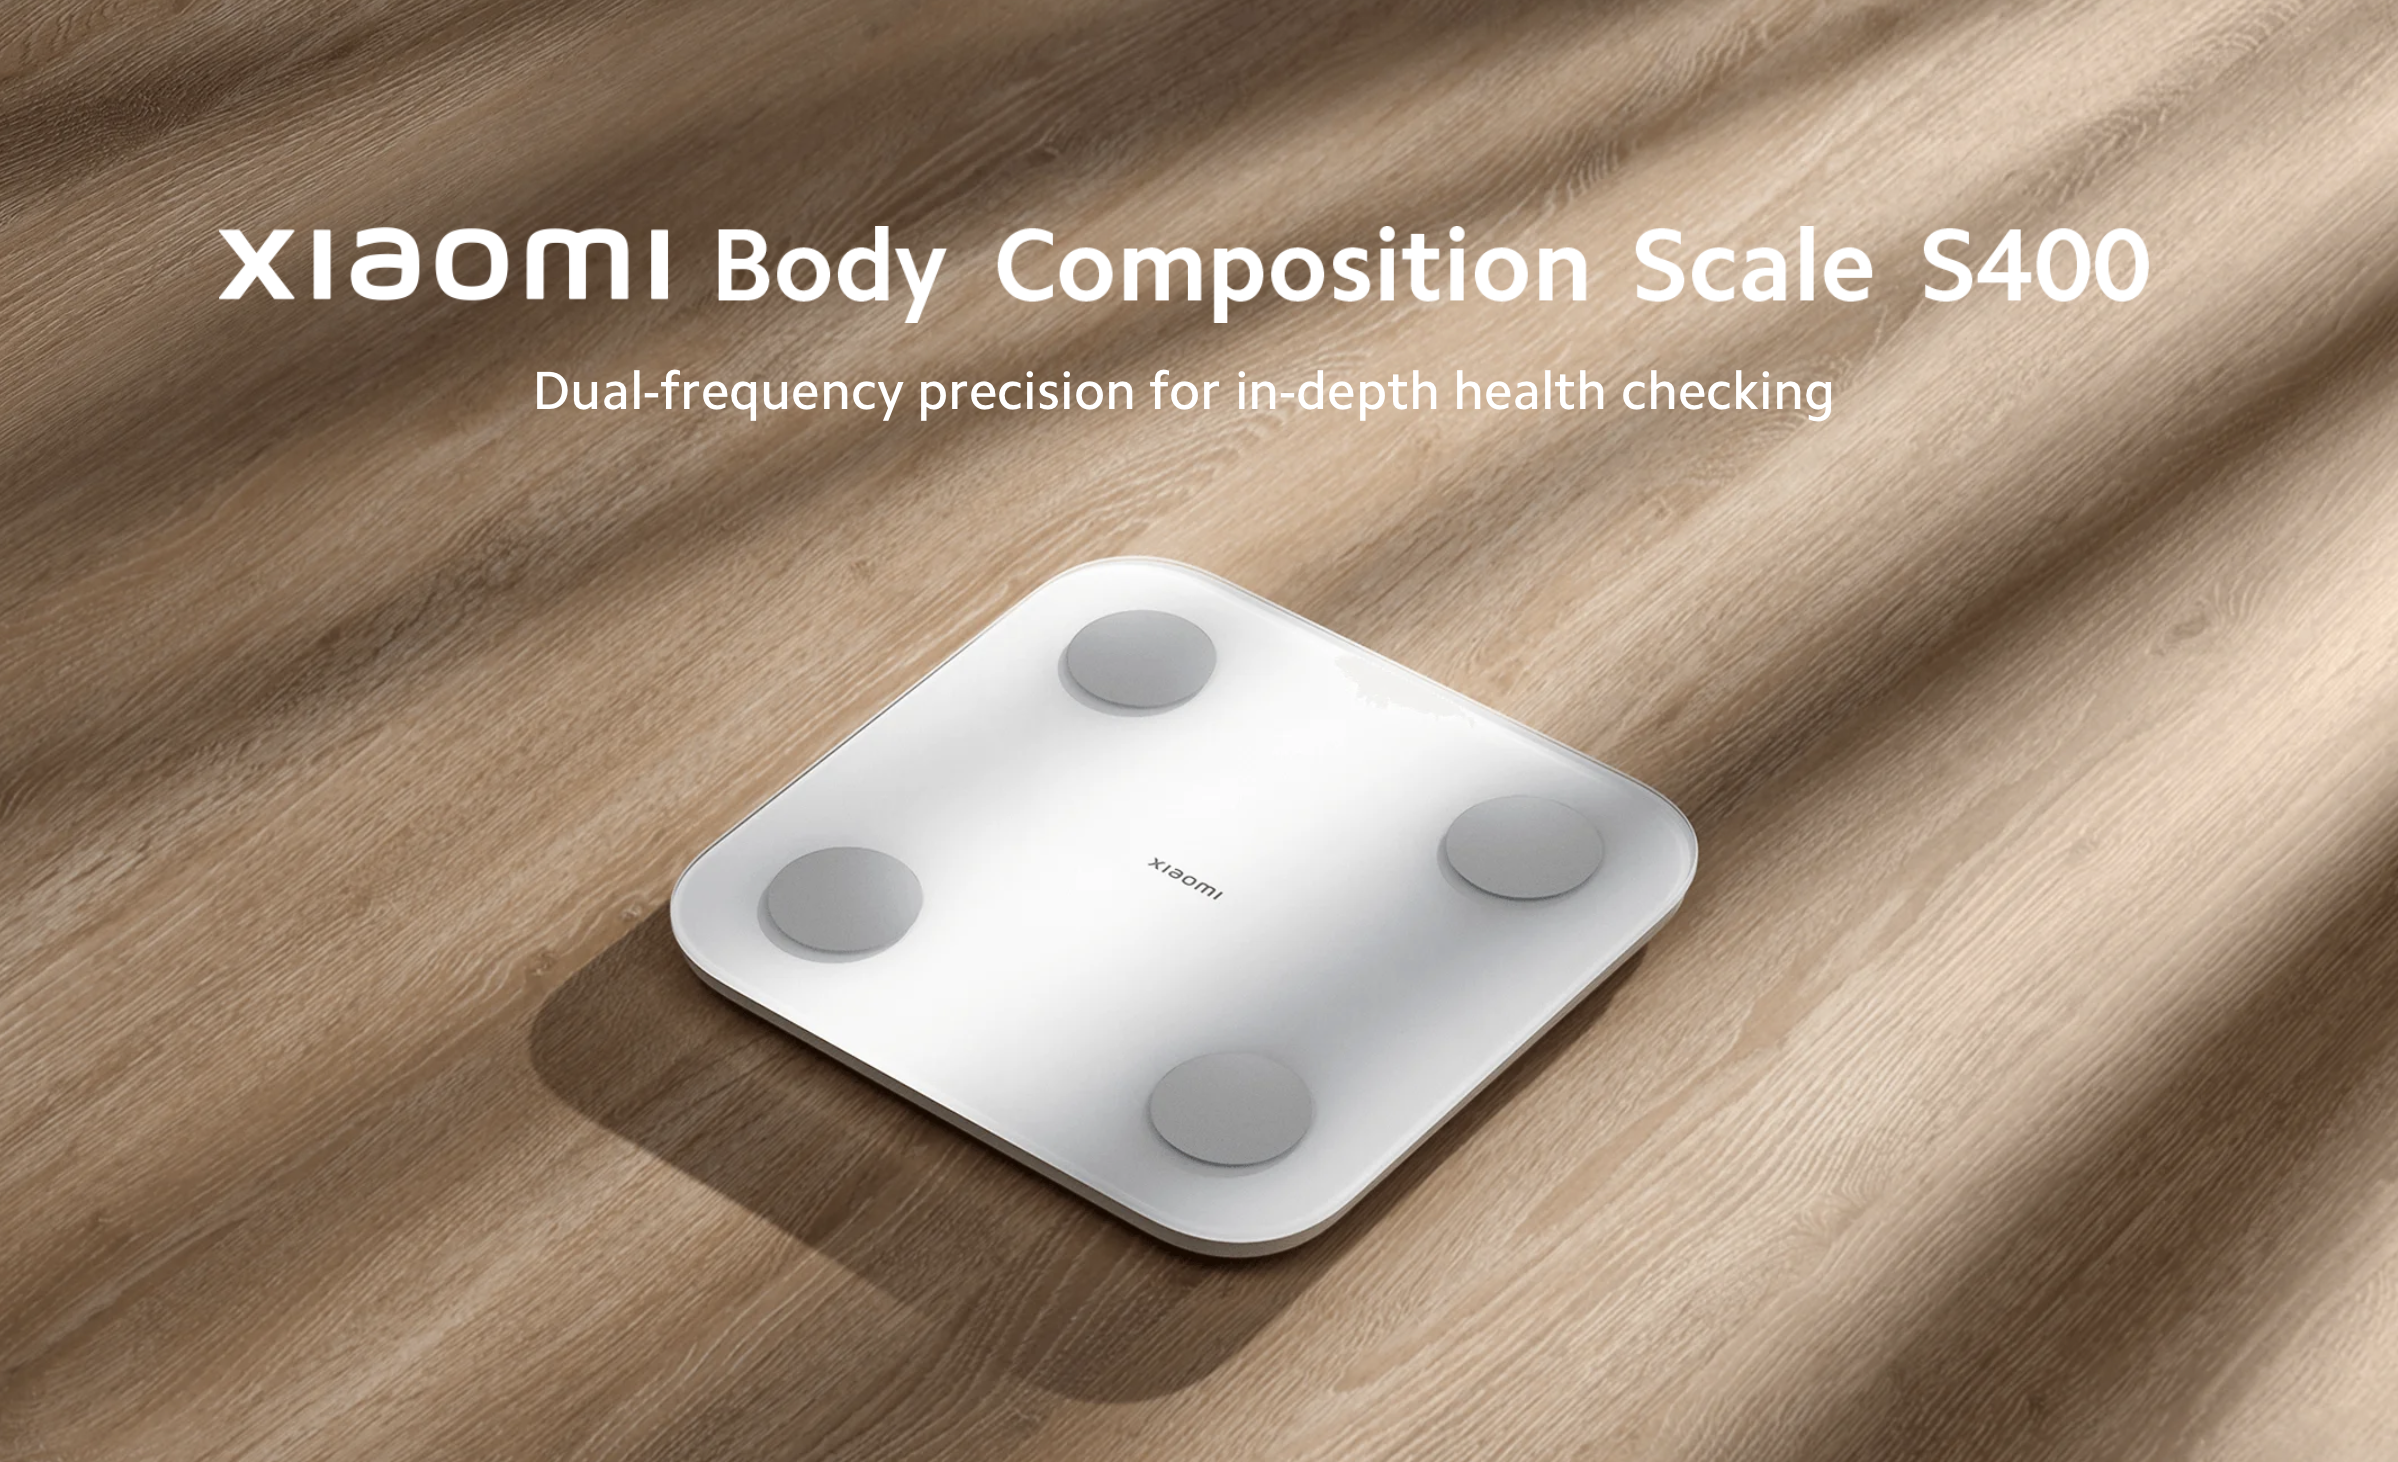 Xiaomi hat die Körperanalysewaage S400 auf den Weltmarkt gebracht, sie kann 25 Gesundheitsindikatoren messen